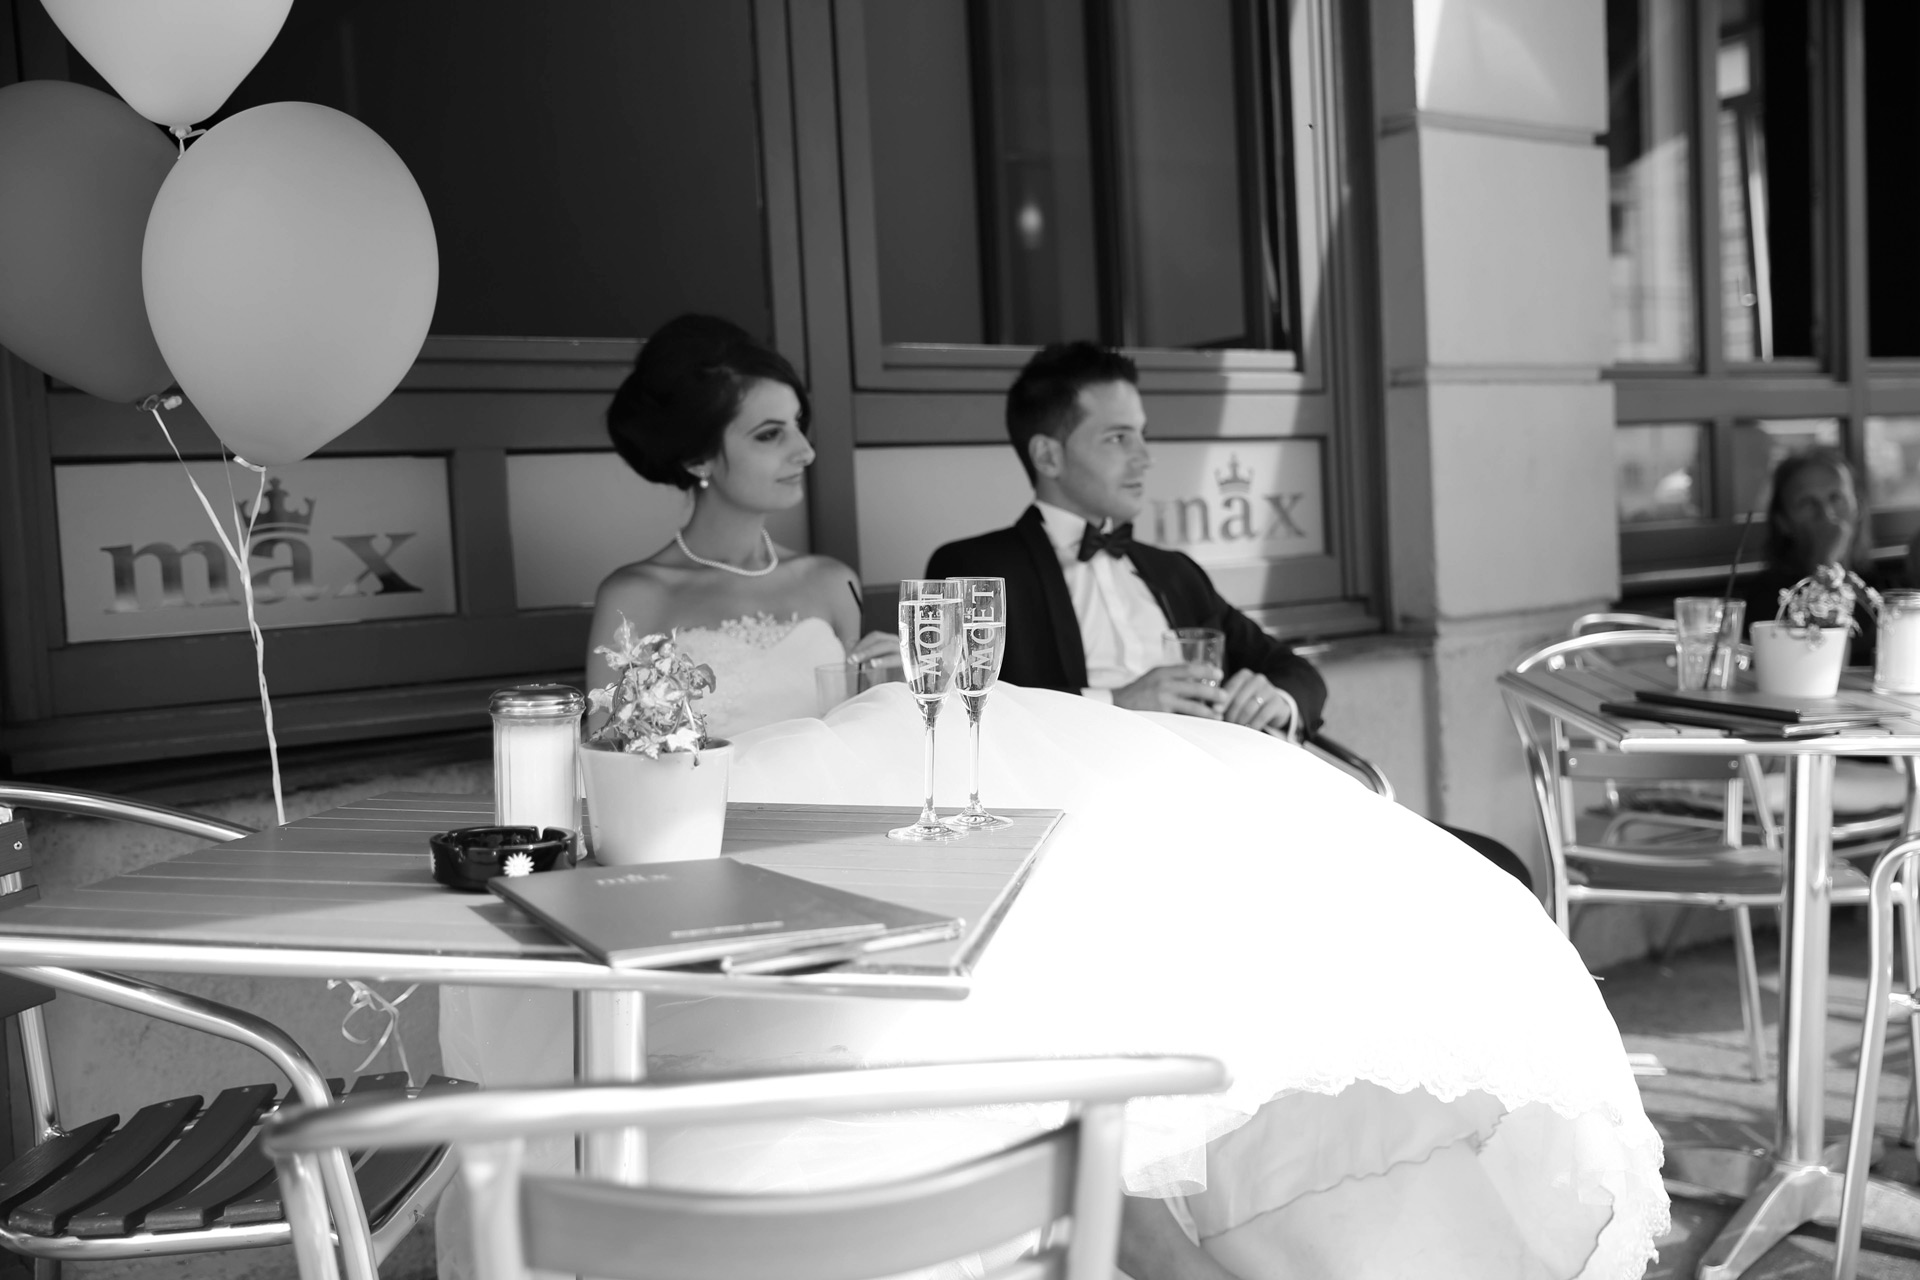 Hochzeit in der Maxstraße Augsburg, Braut sitzt drausse nim Cafe Max mit Champagner